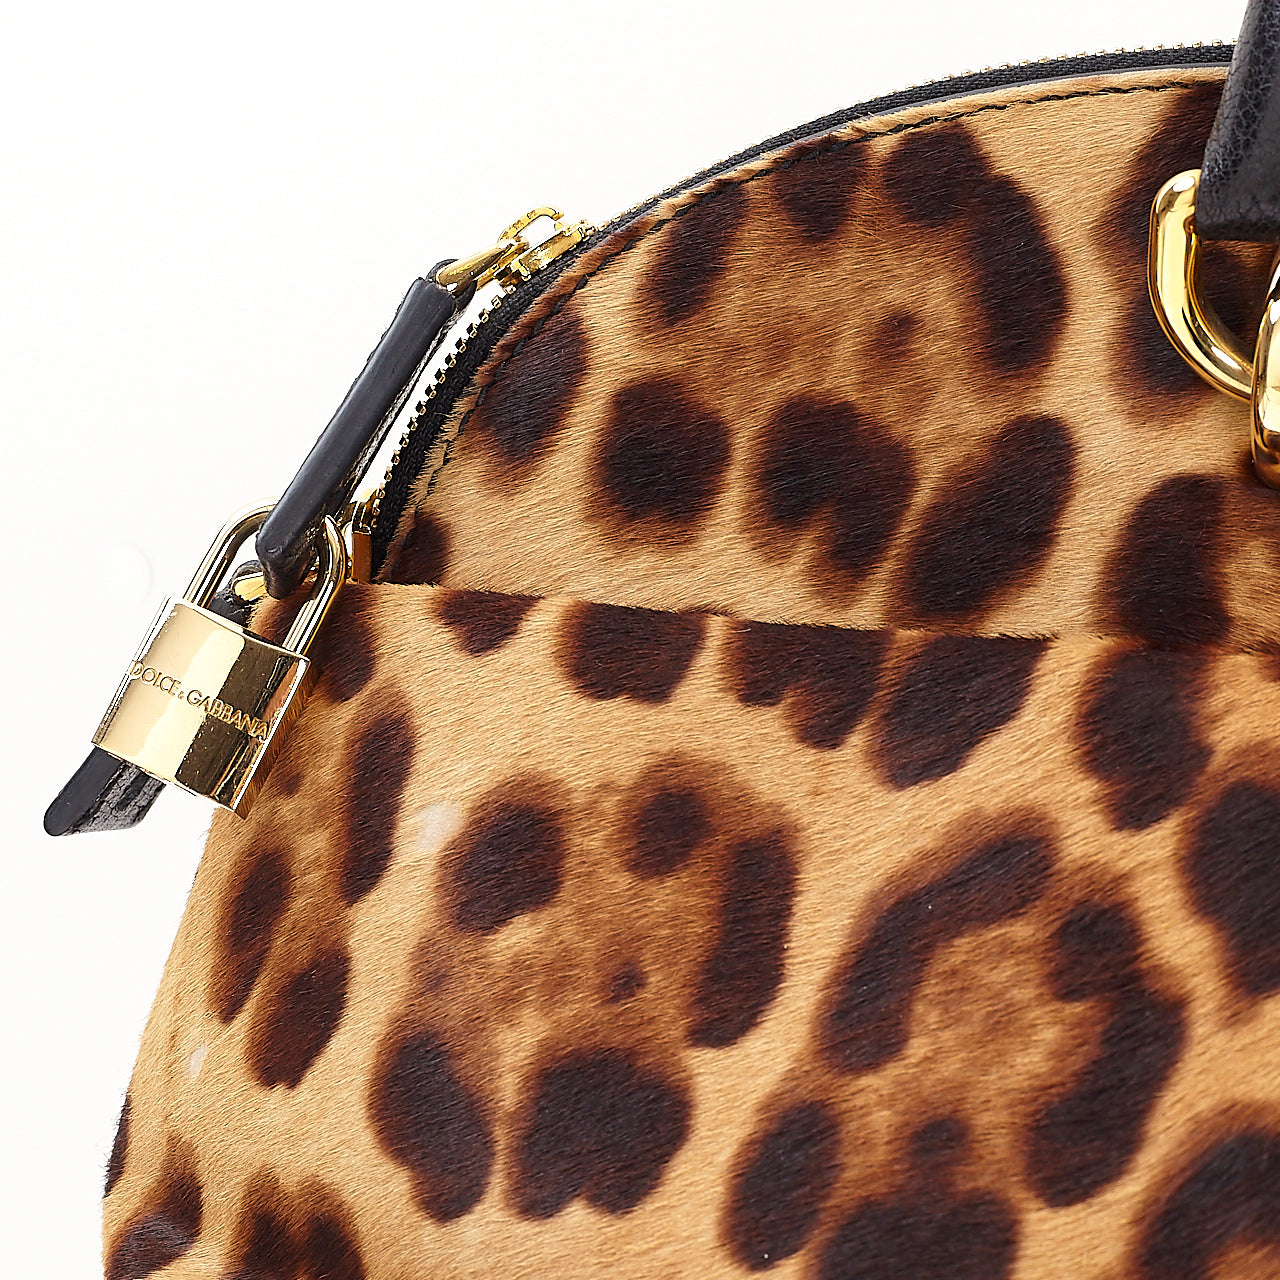 Leopard Calfskin Bowling Bag